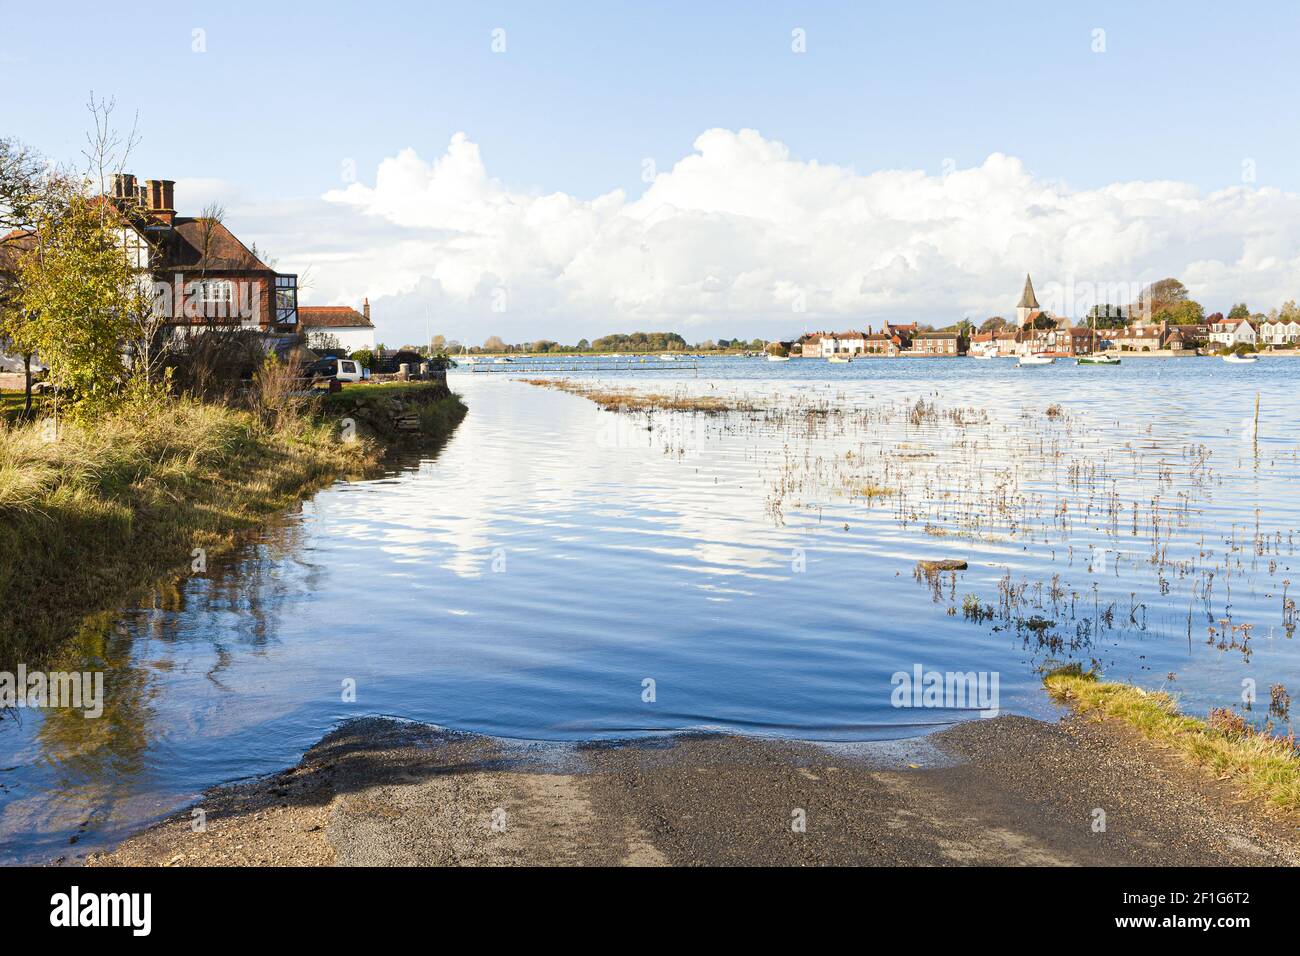 La marée haute inonde la route dans le village de Bosham, West Sussex Royaume-Uni. C'est ici que le roi Canute (Cnut) est réputé avoir intilement instruit la marée Banque D'Images